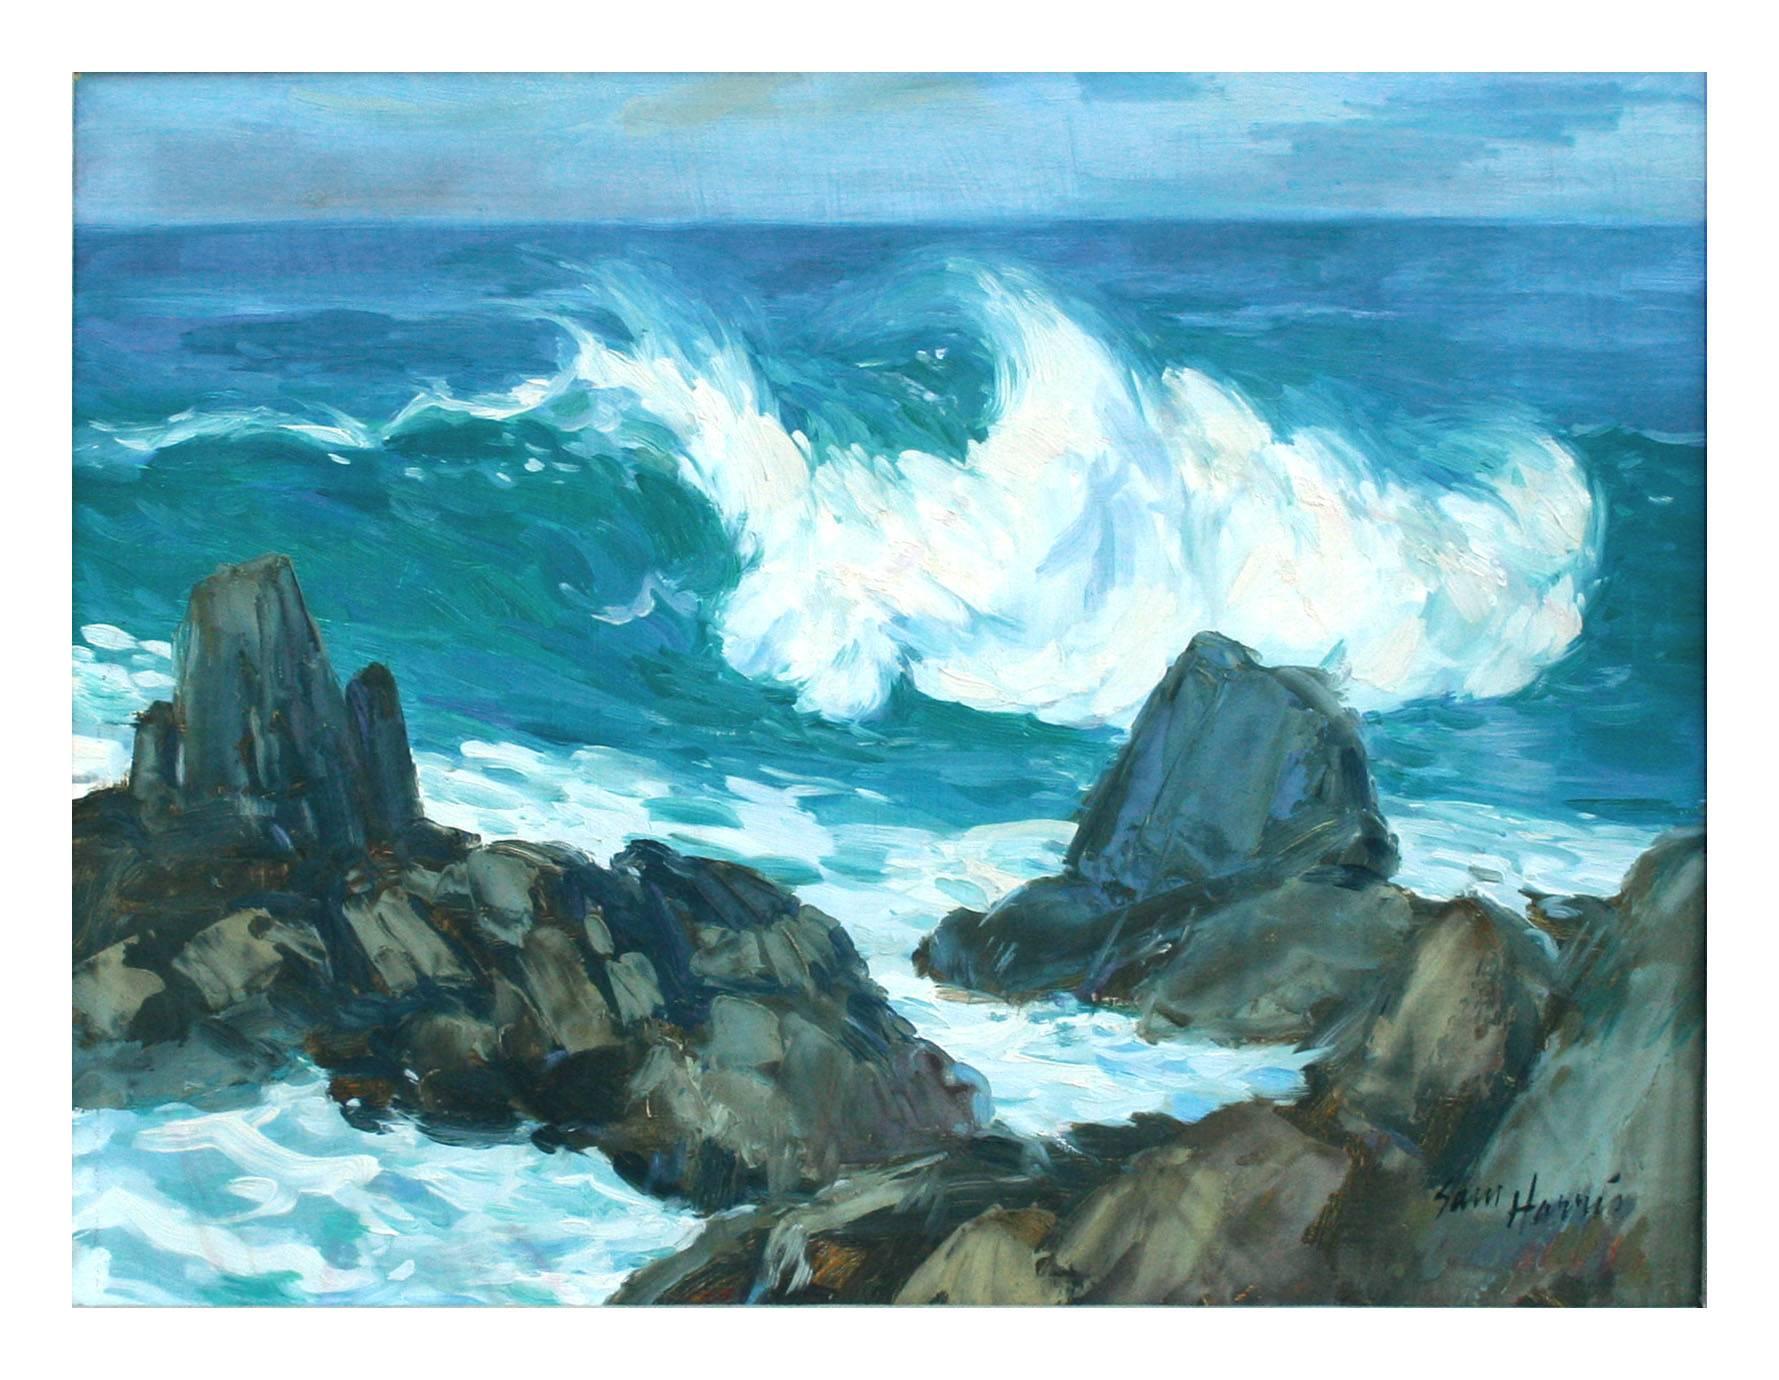 Big Surf at Carmel - Painting by Sam Hugh Harris